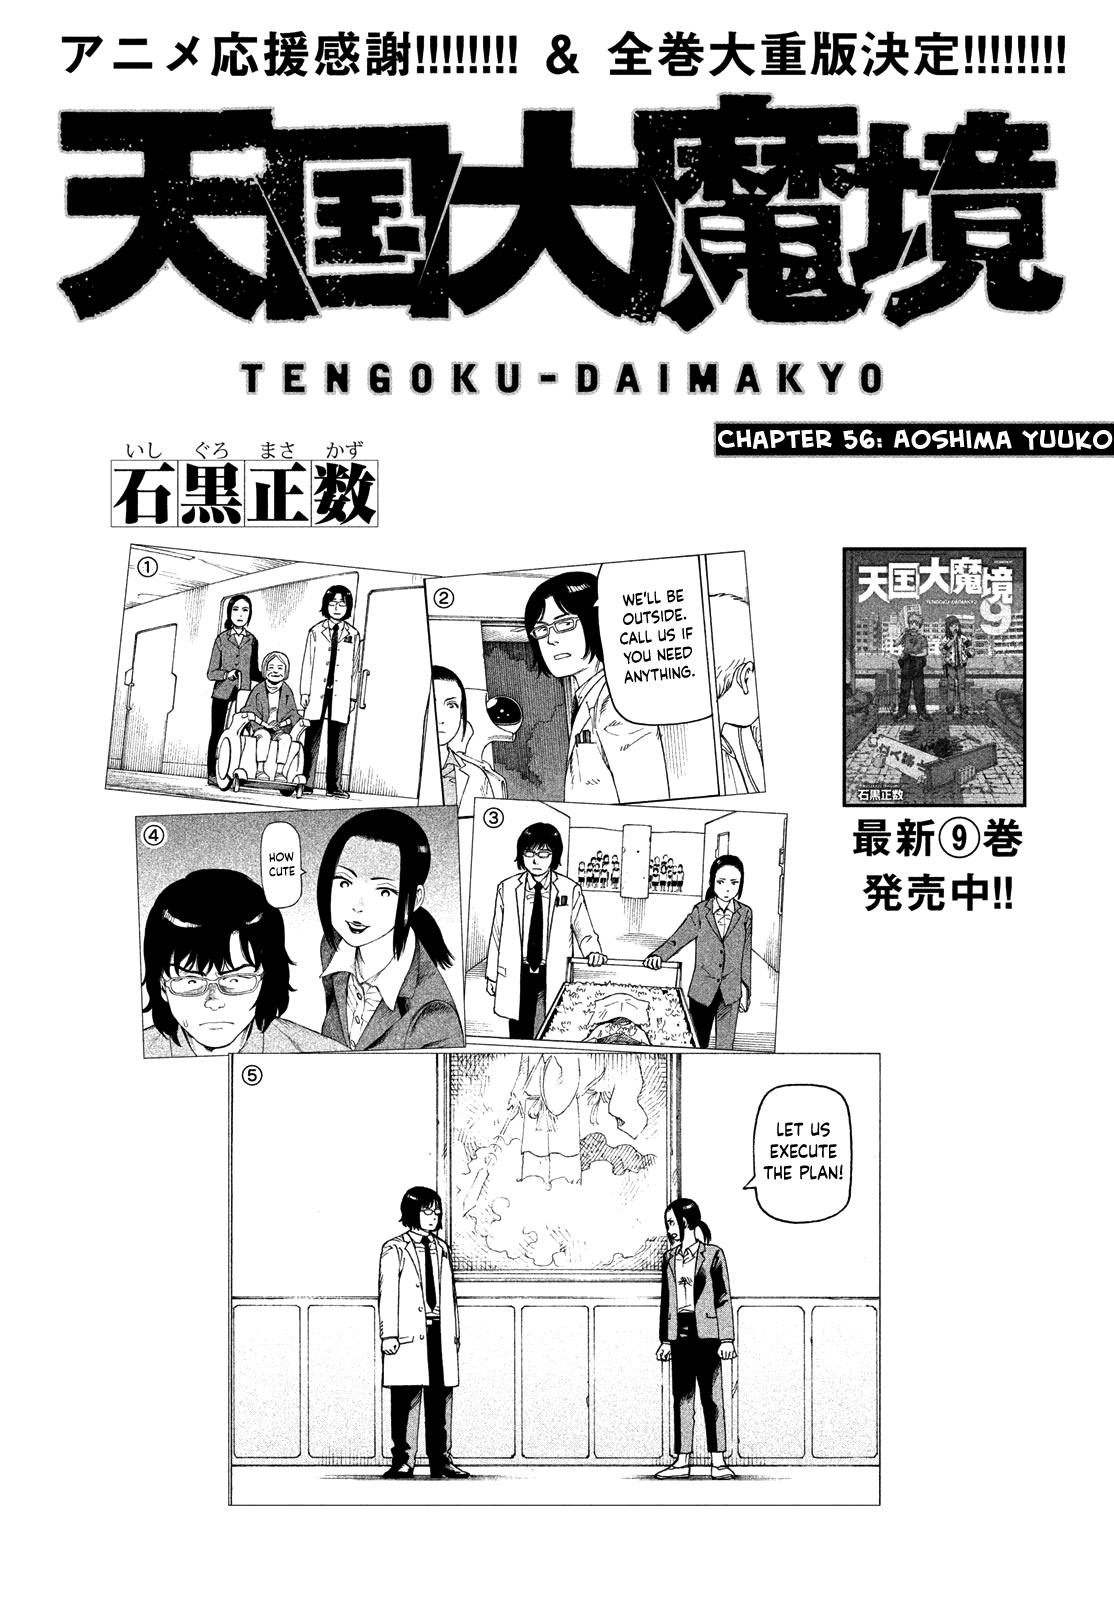 Tengoku Daimakyou Chapter 56 #1